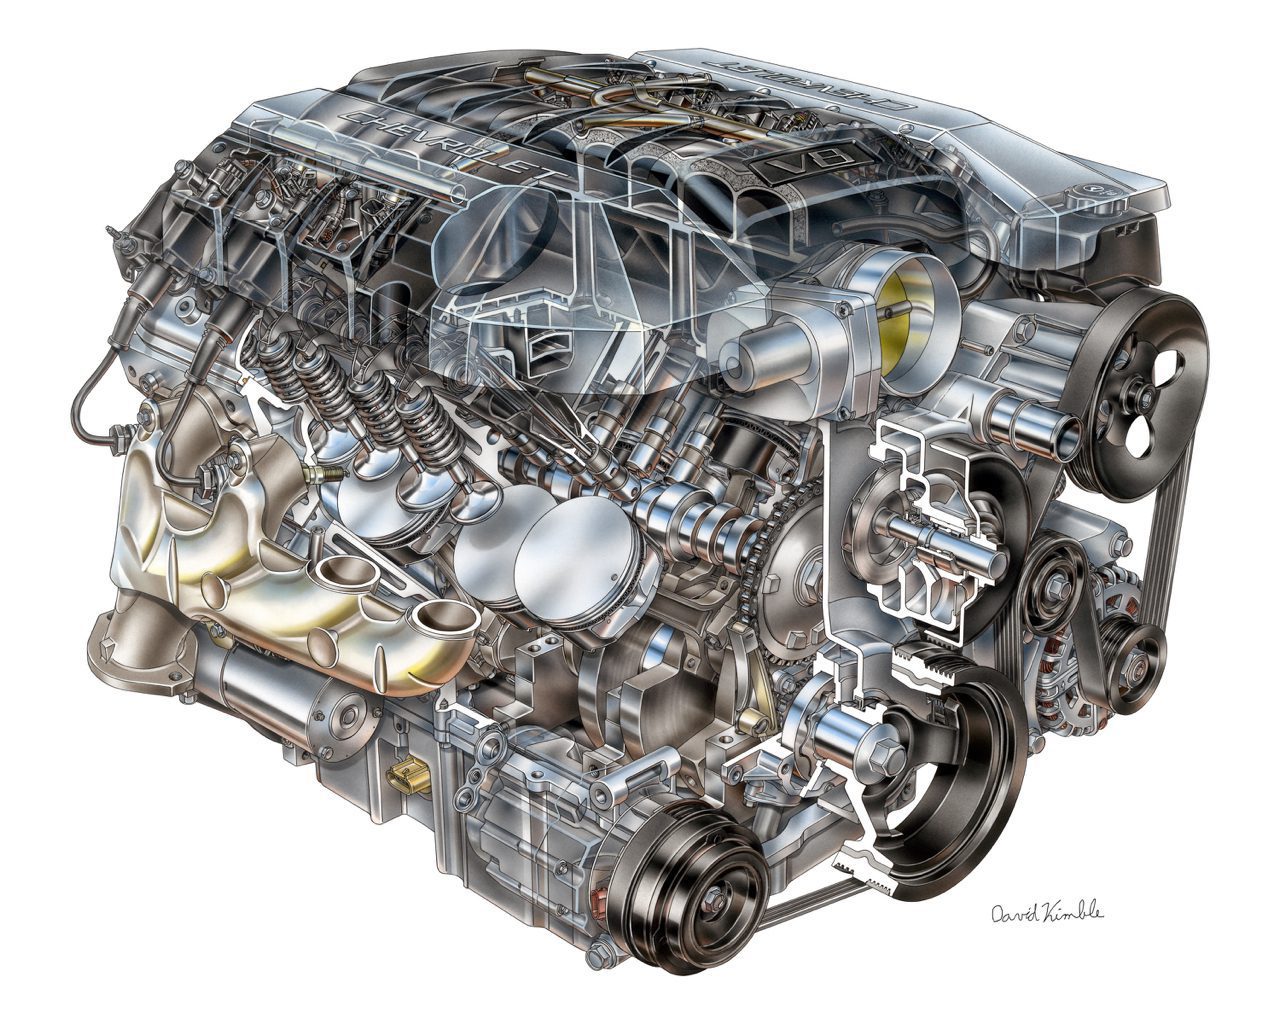 Il motore Chevrolet LS3